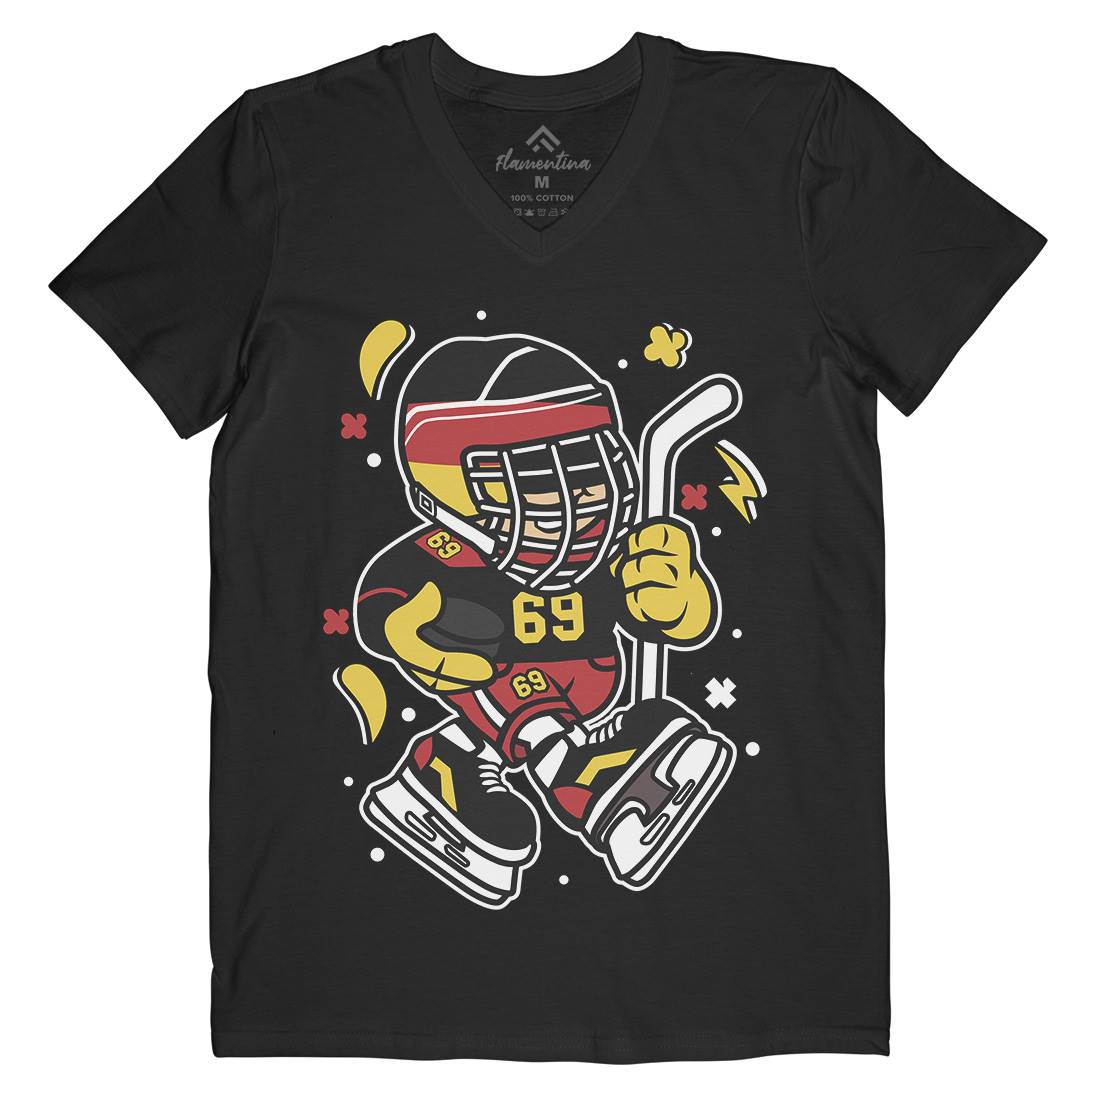 Germany Hockey Kid Mens Organic V-Neck T-Shirt Sport C551